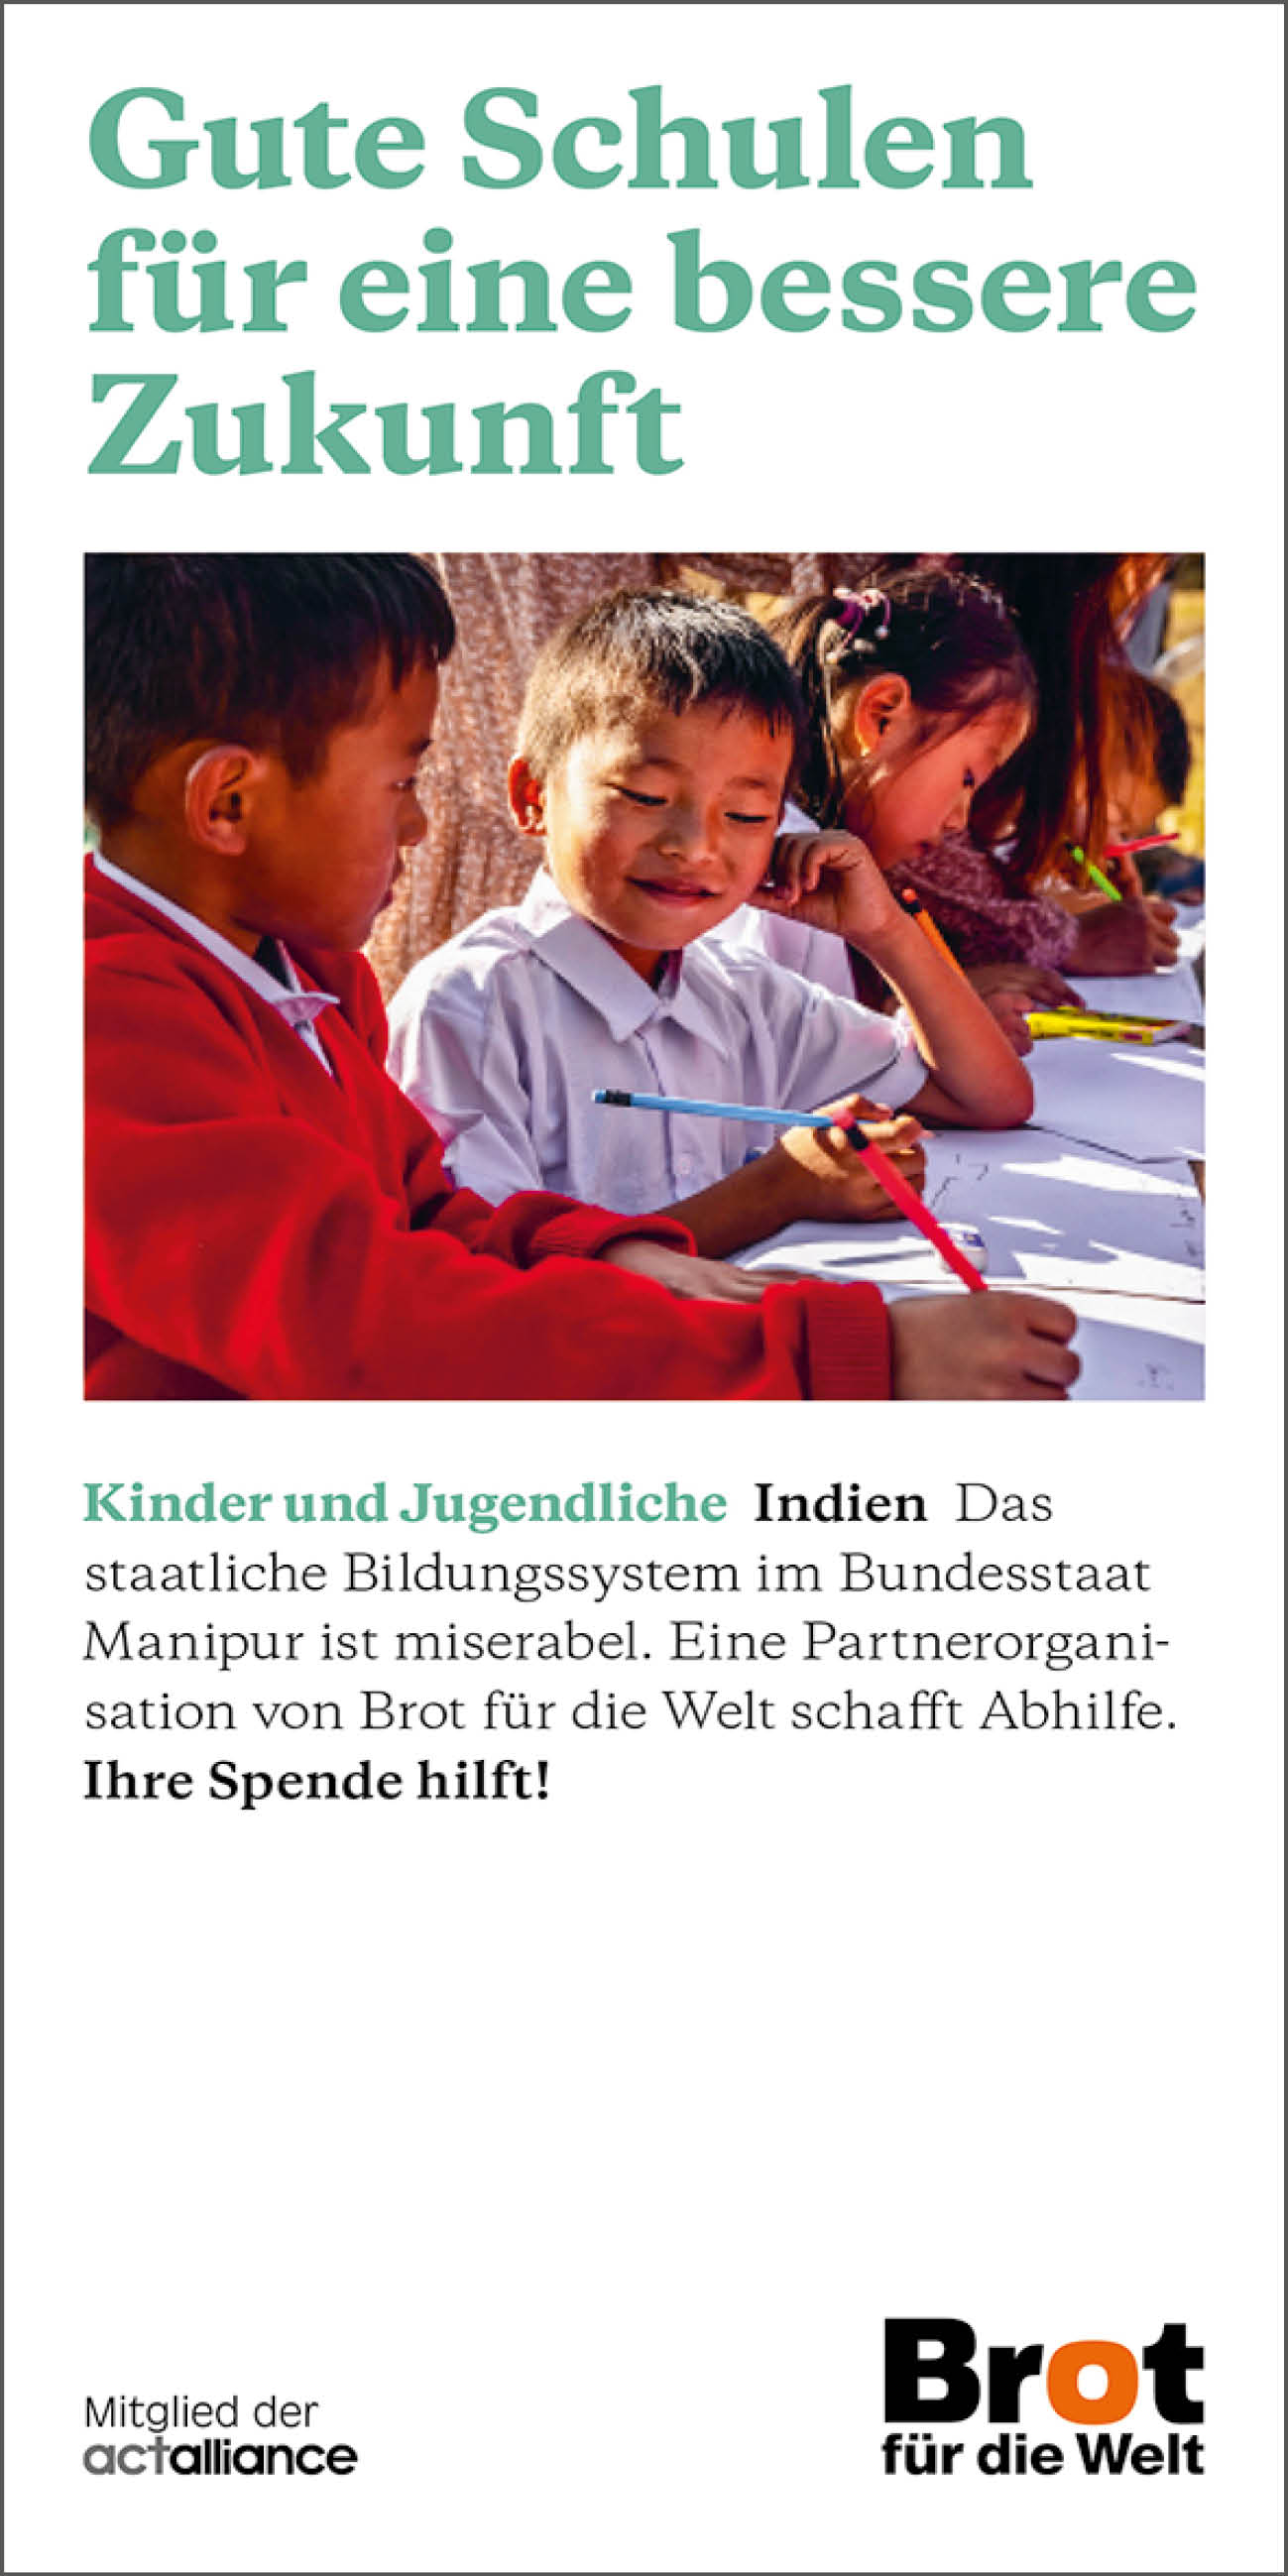 Indien - Gute Schulen für eine bessere Zukunft (Faltblatt Kinder und Jugendliche)